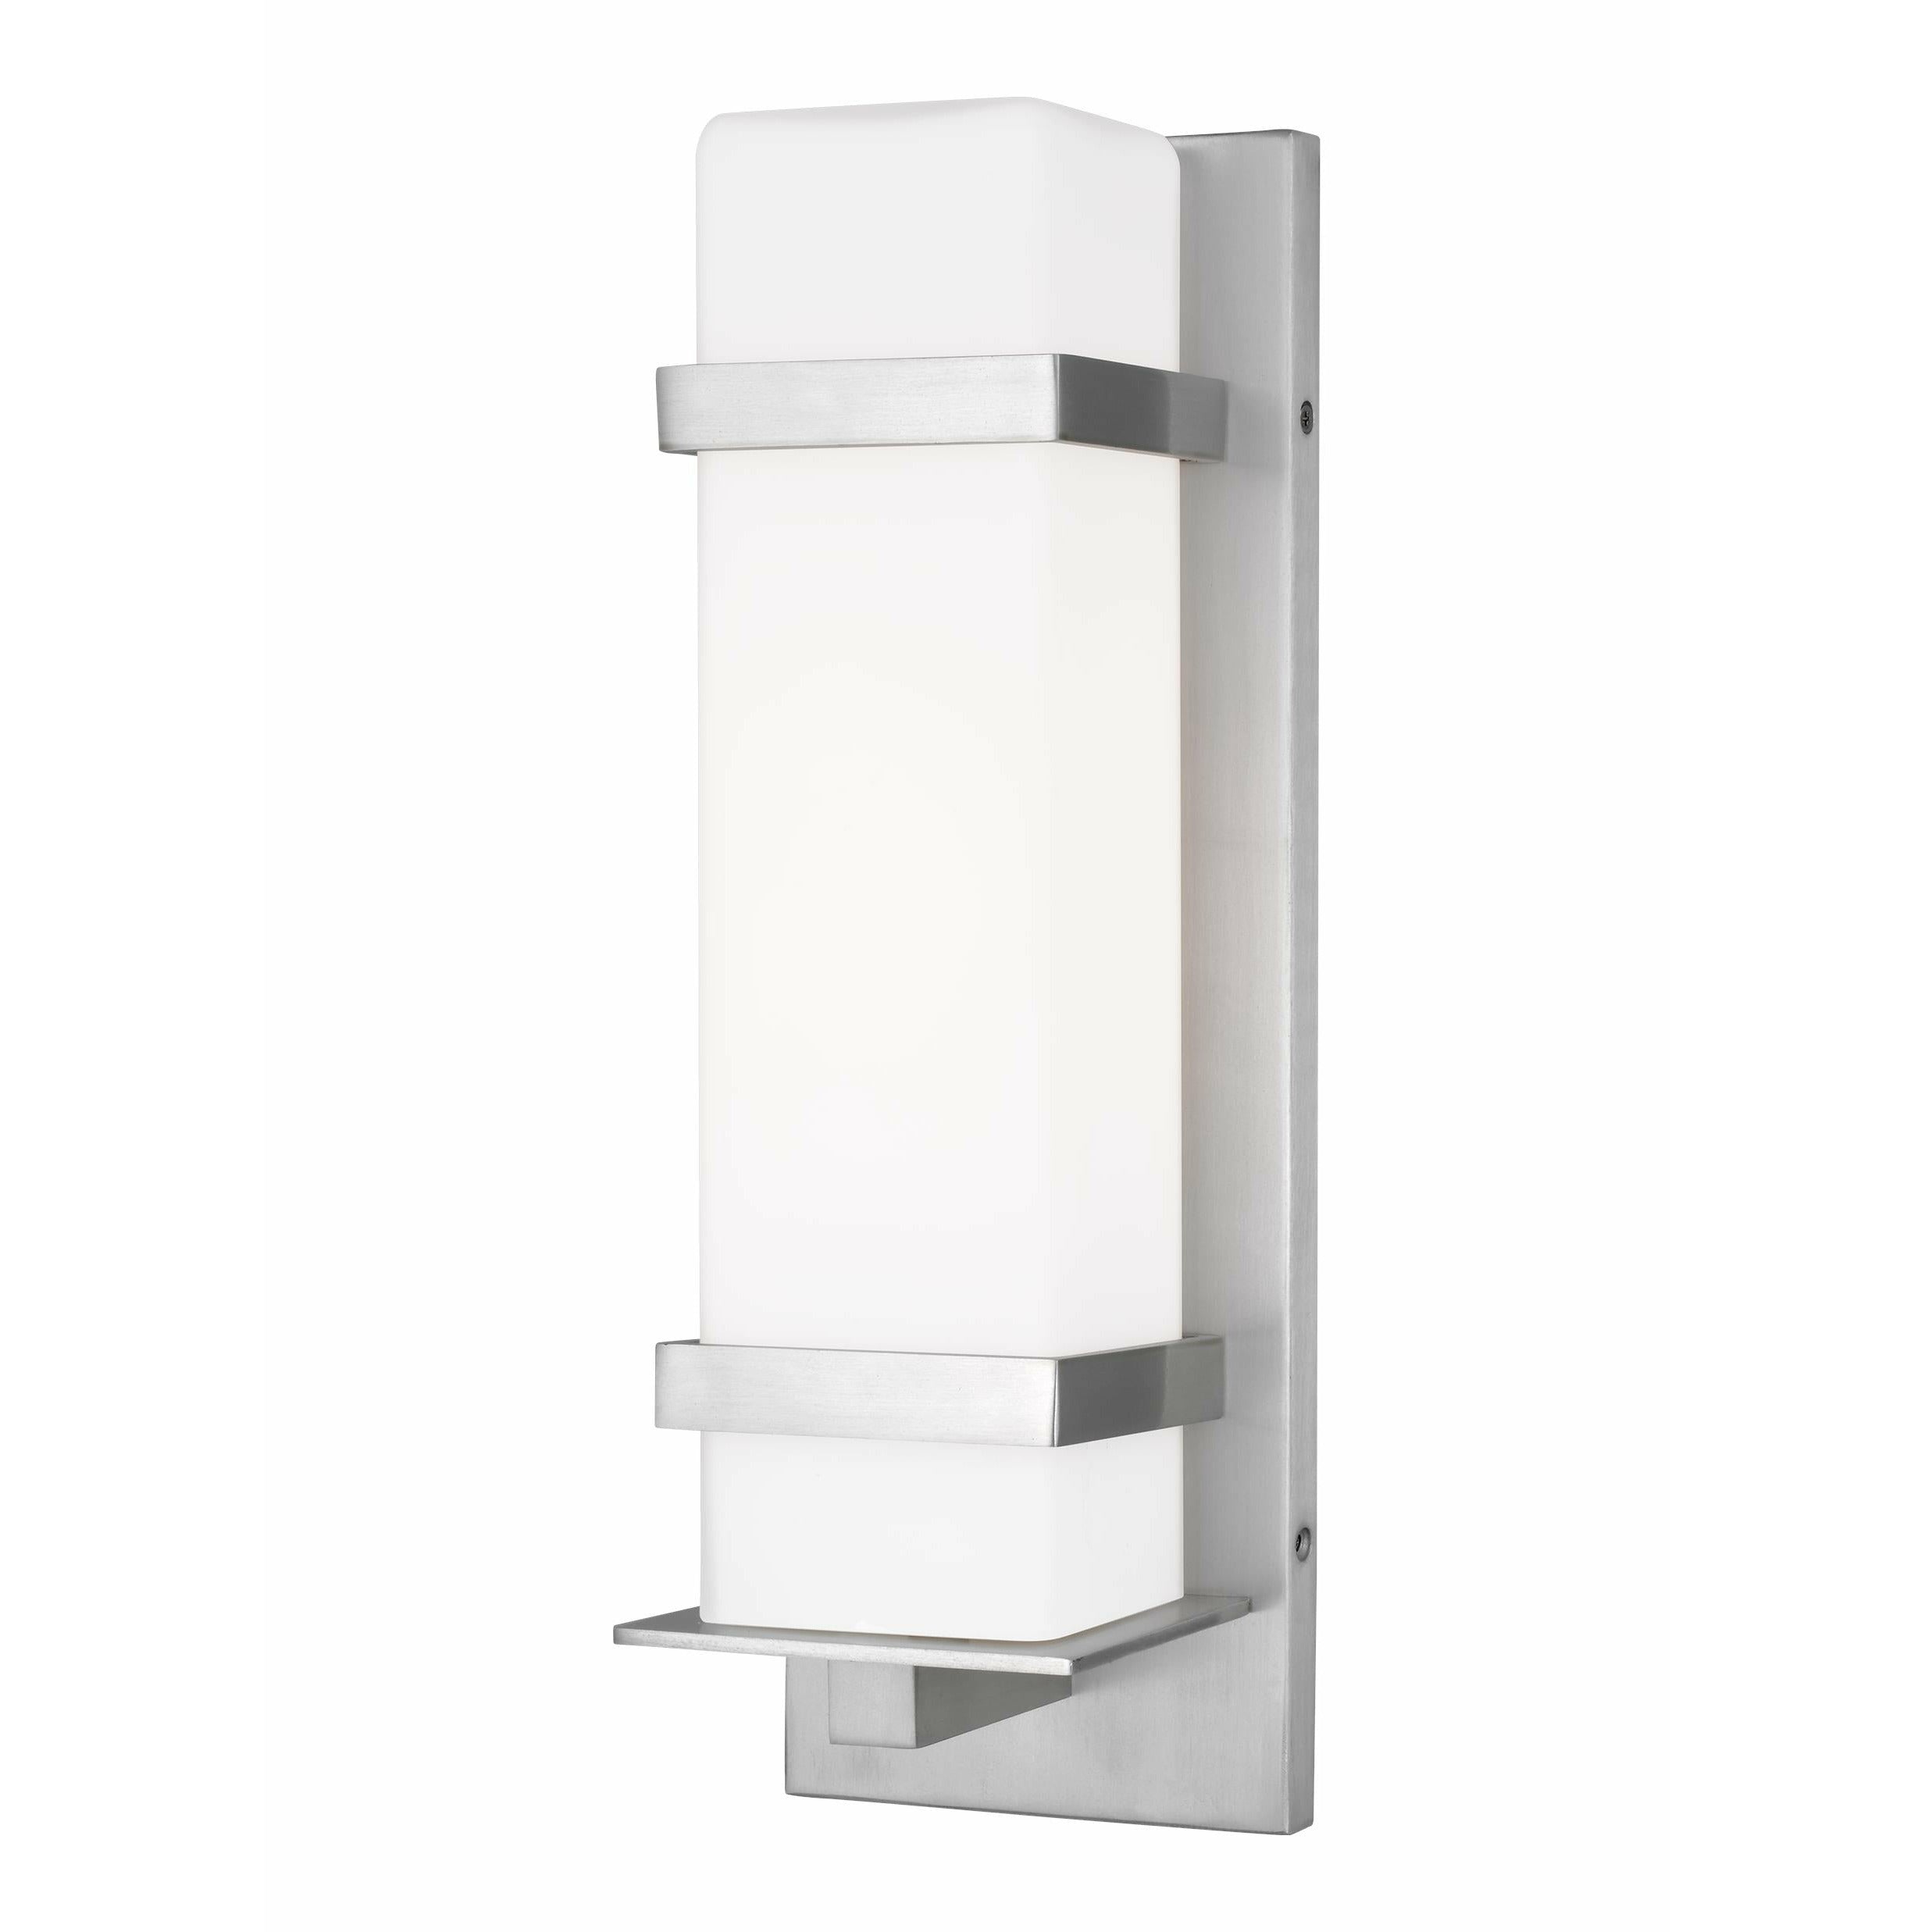 Alban Medium 1-Light Outdoor Wall Light